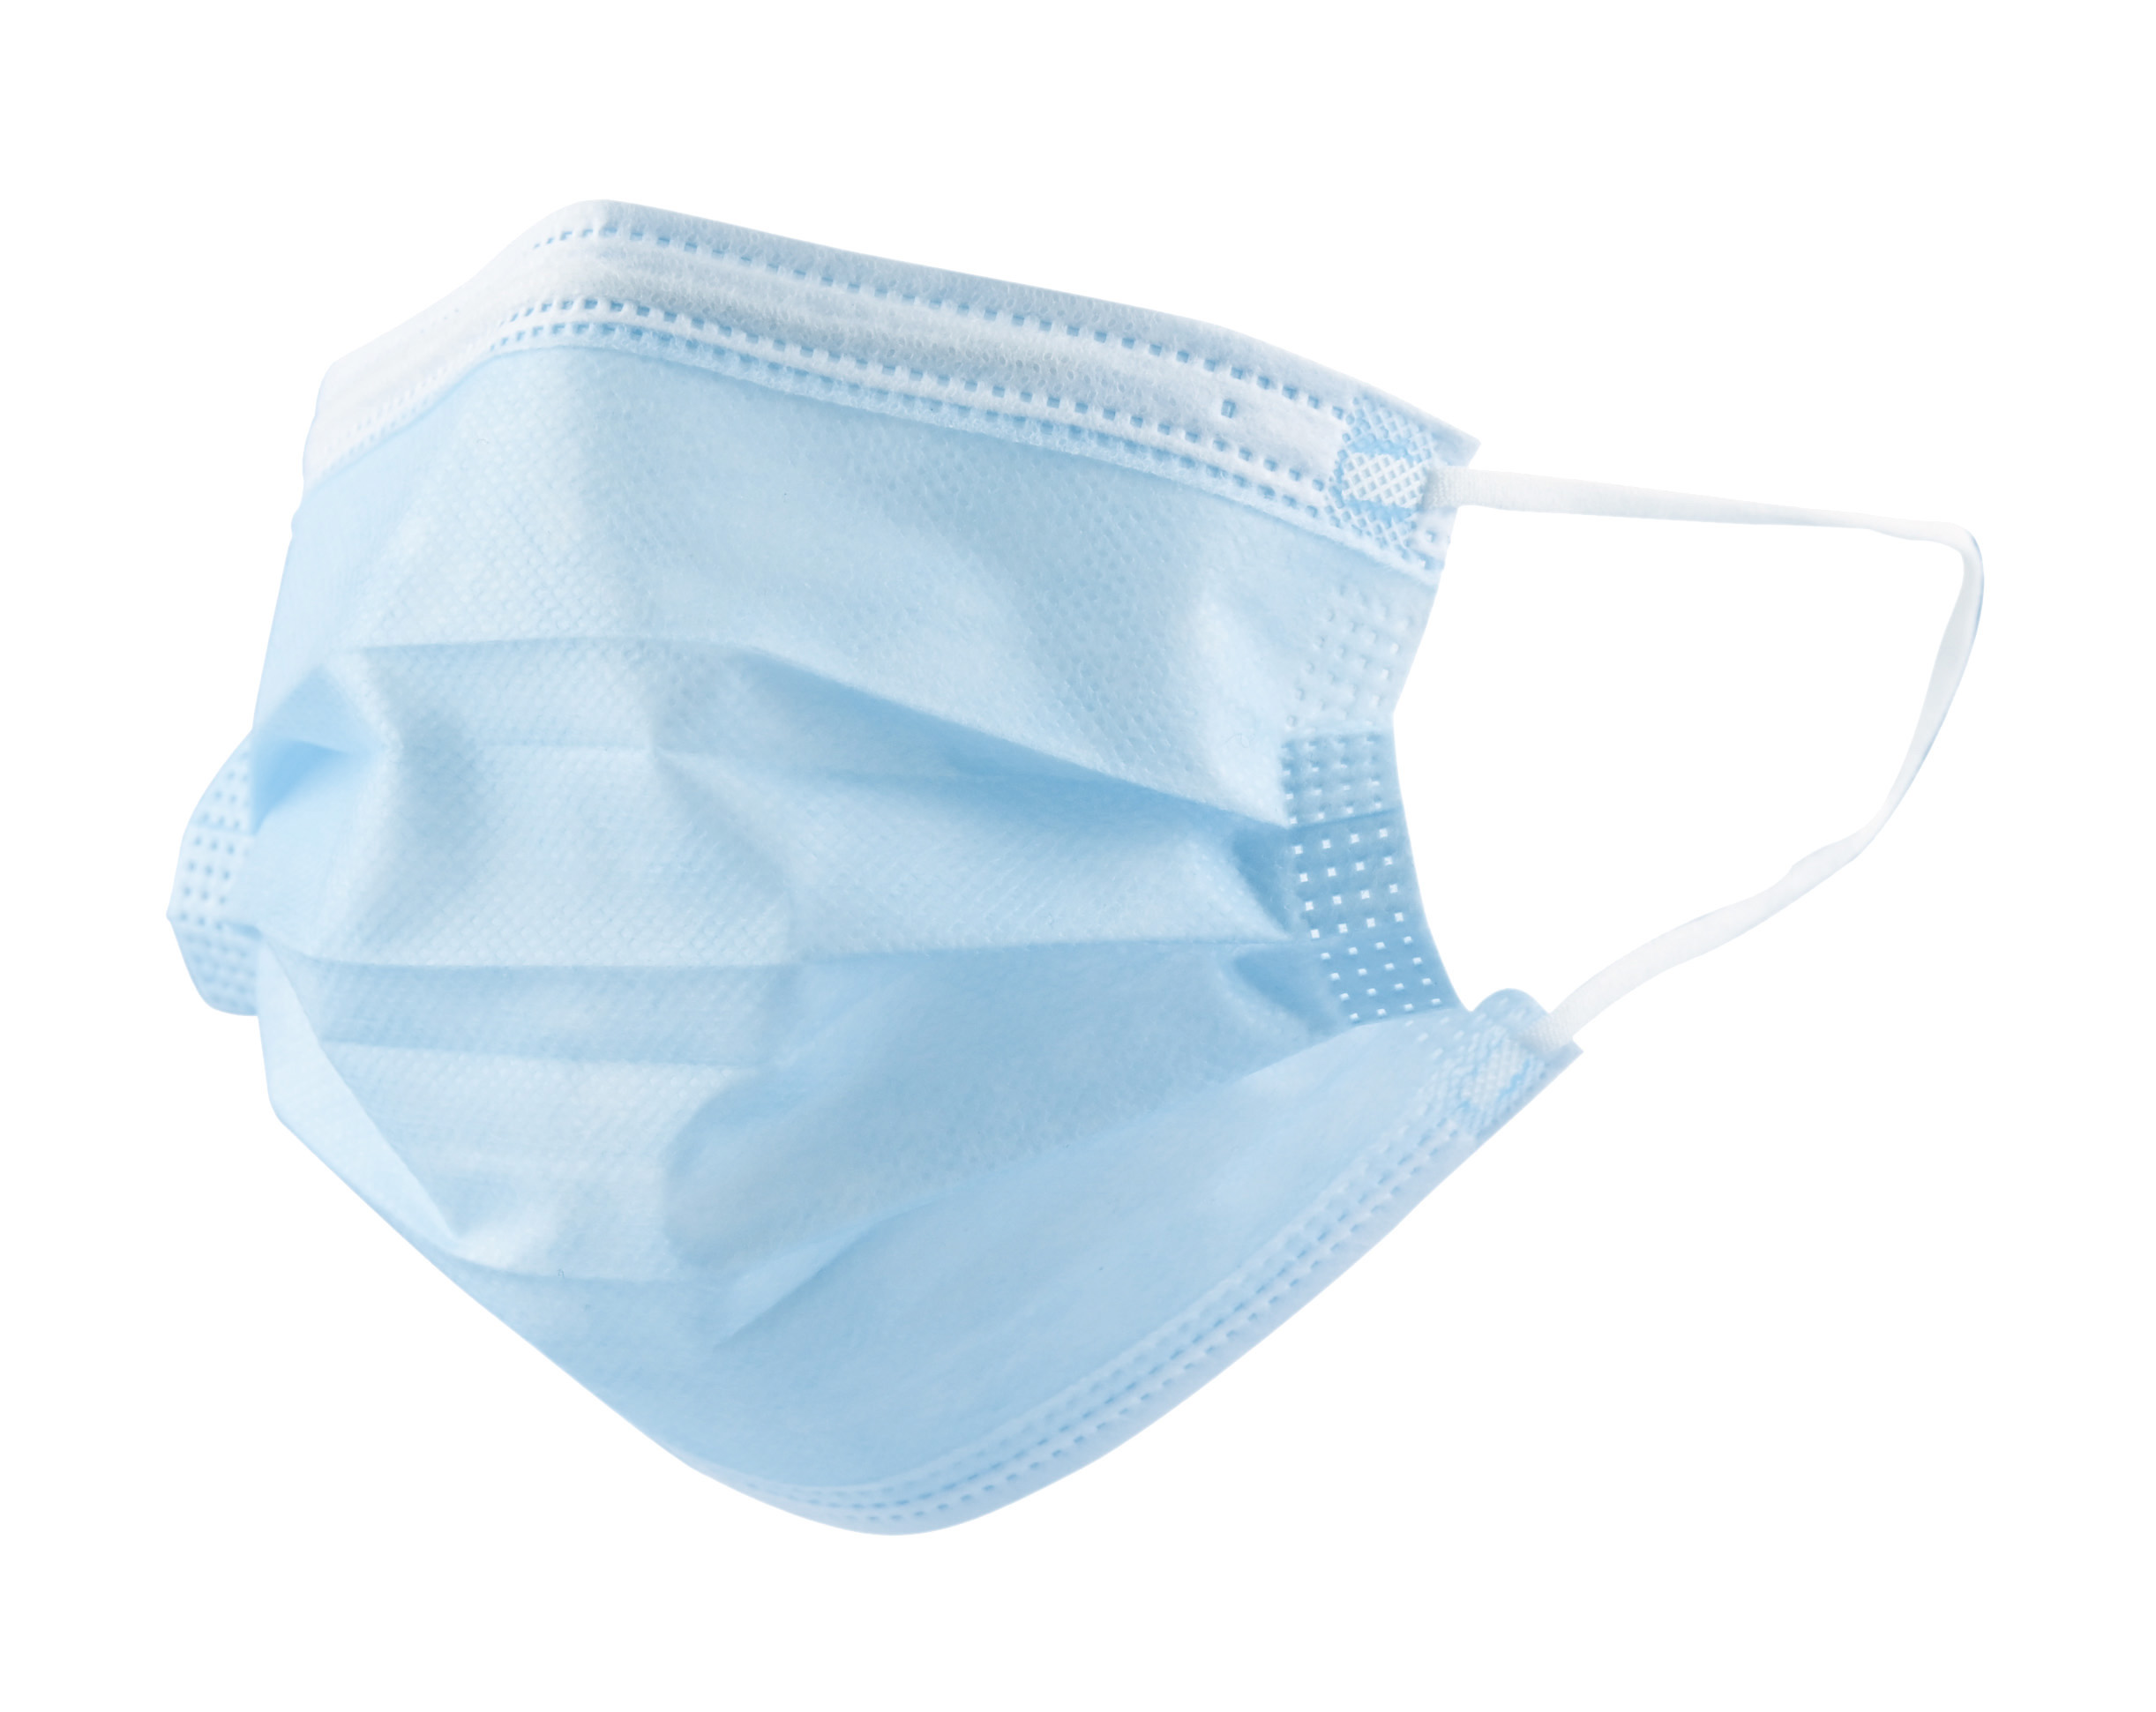 紡織所建構完整的醫用口罩檢測能量，使防疫物資快速供應市場。